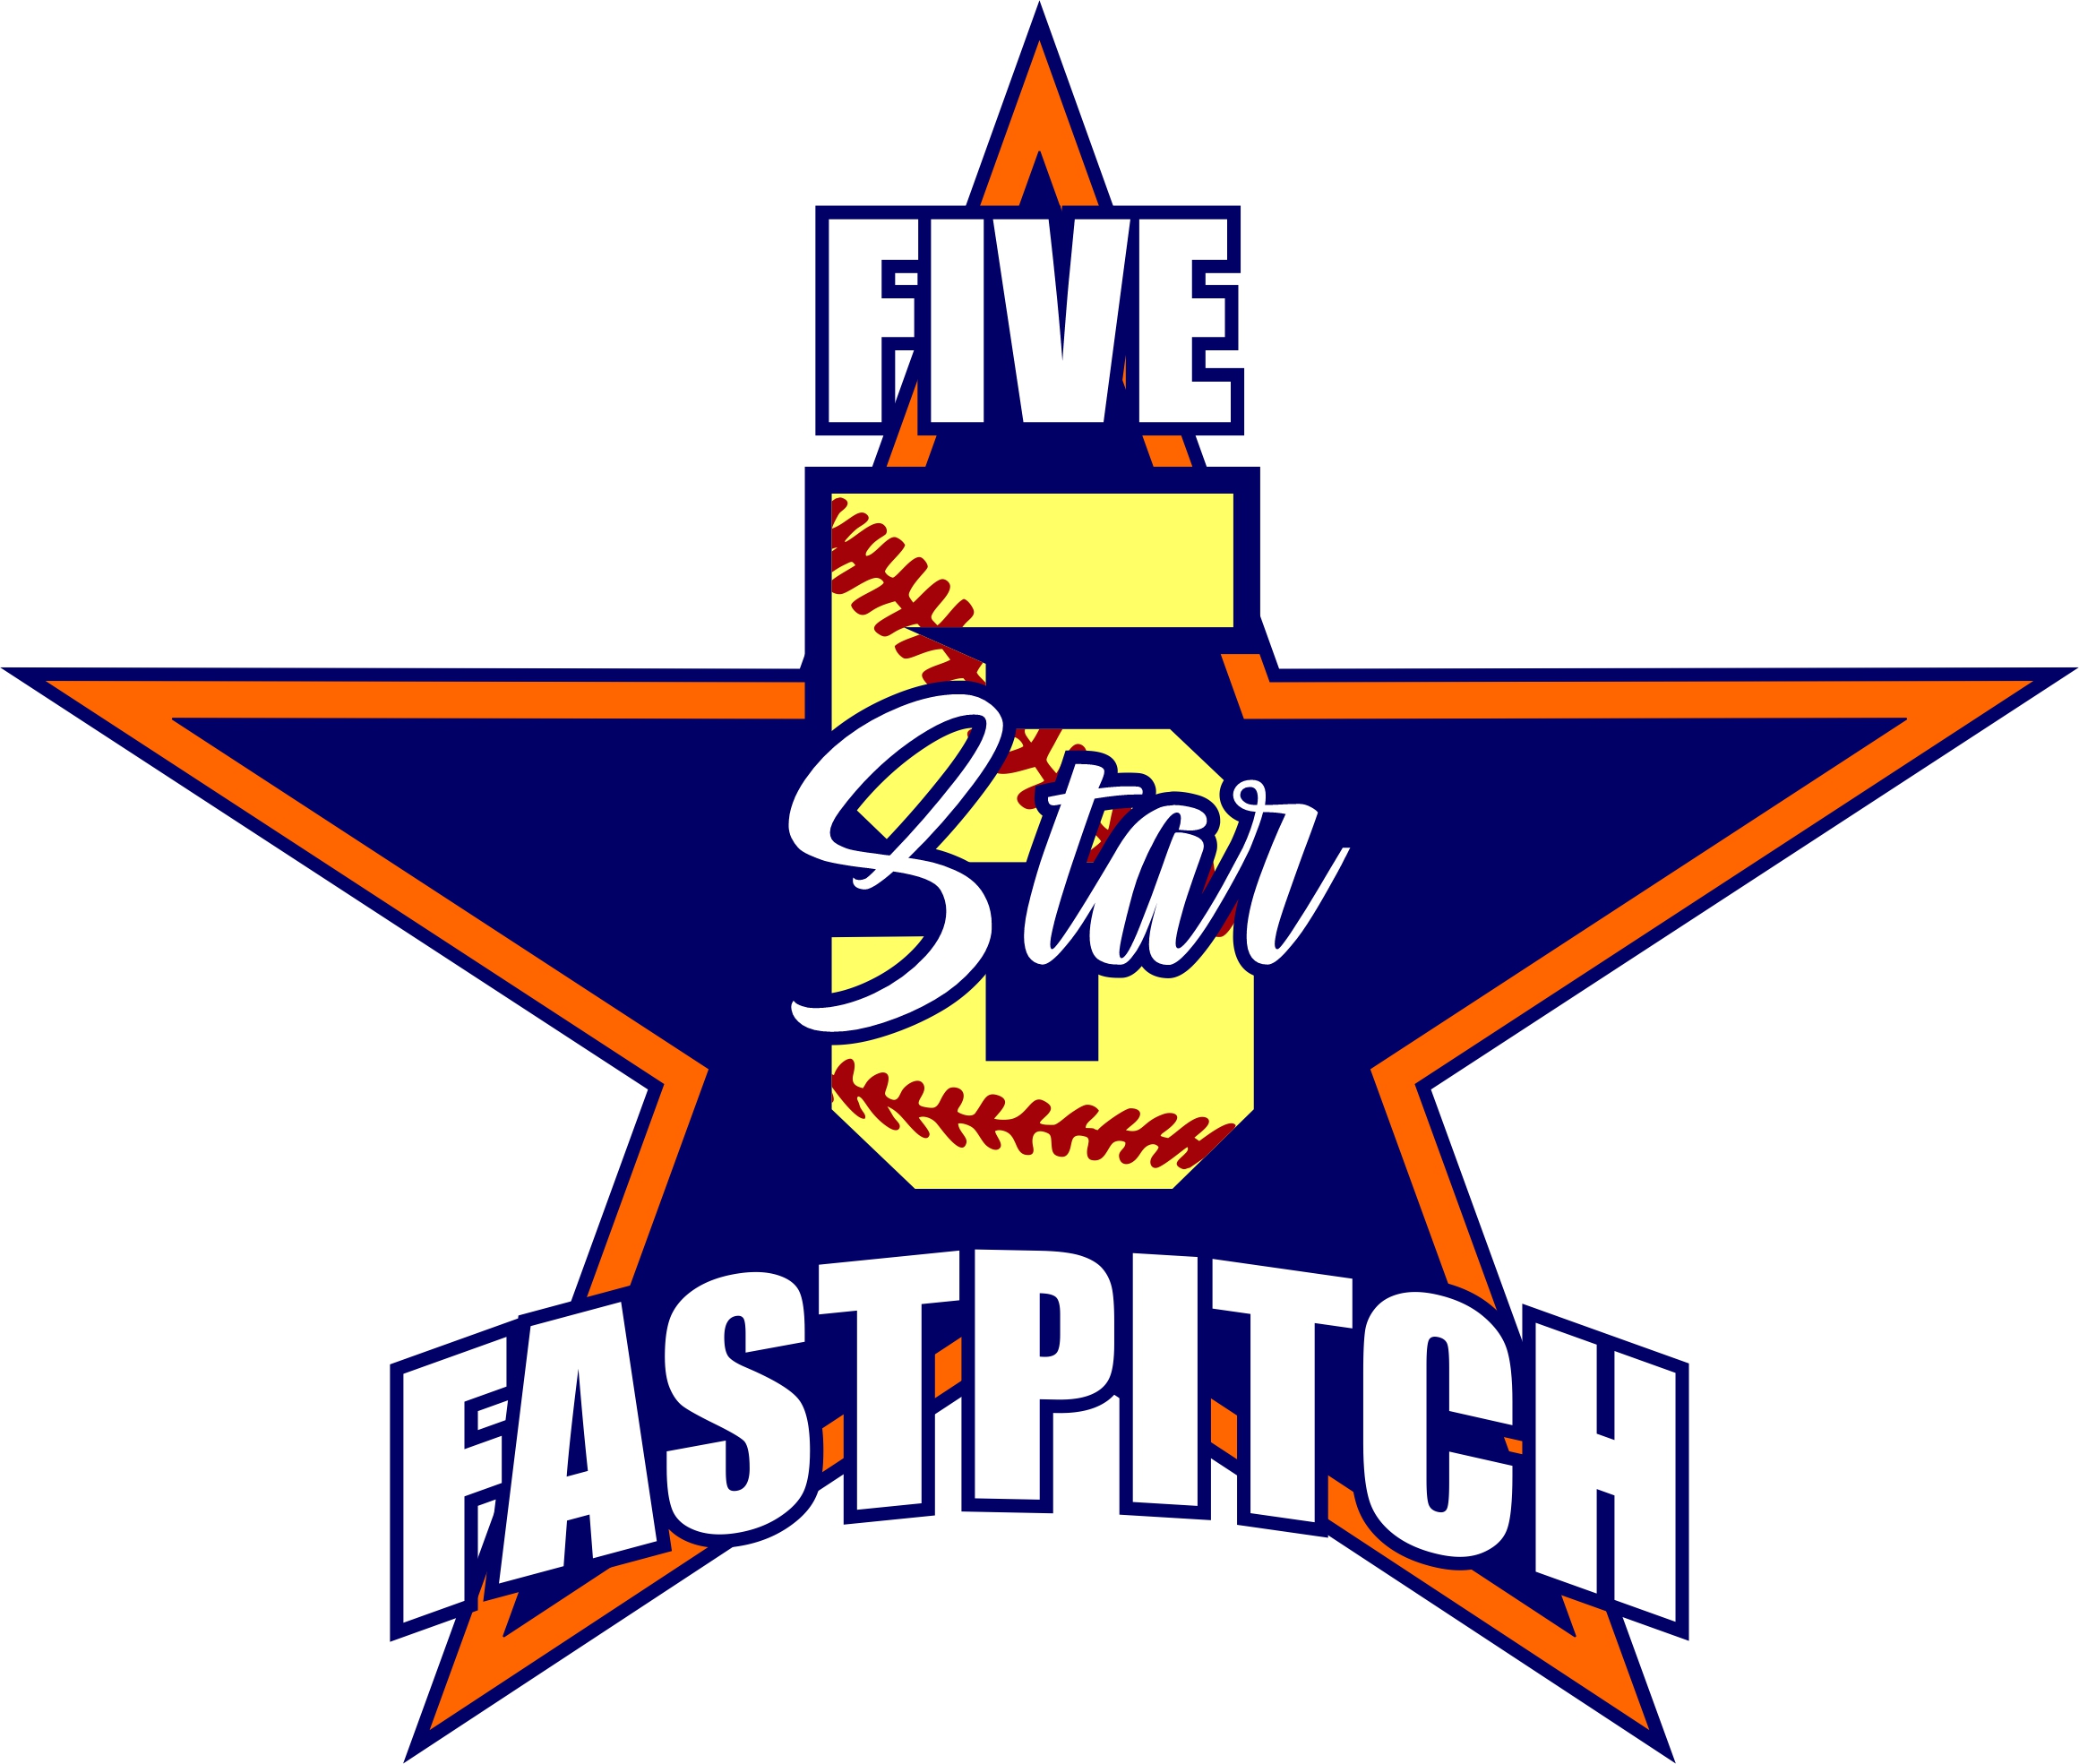 5-star-fastpitch-blue-logo-1_1702346911.jpg